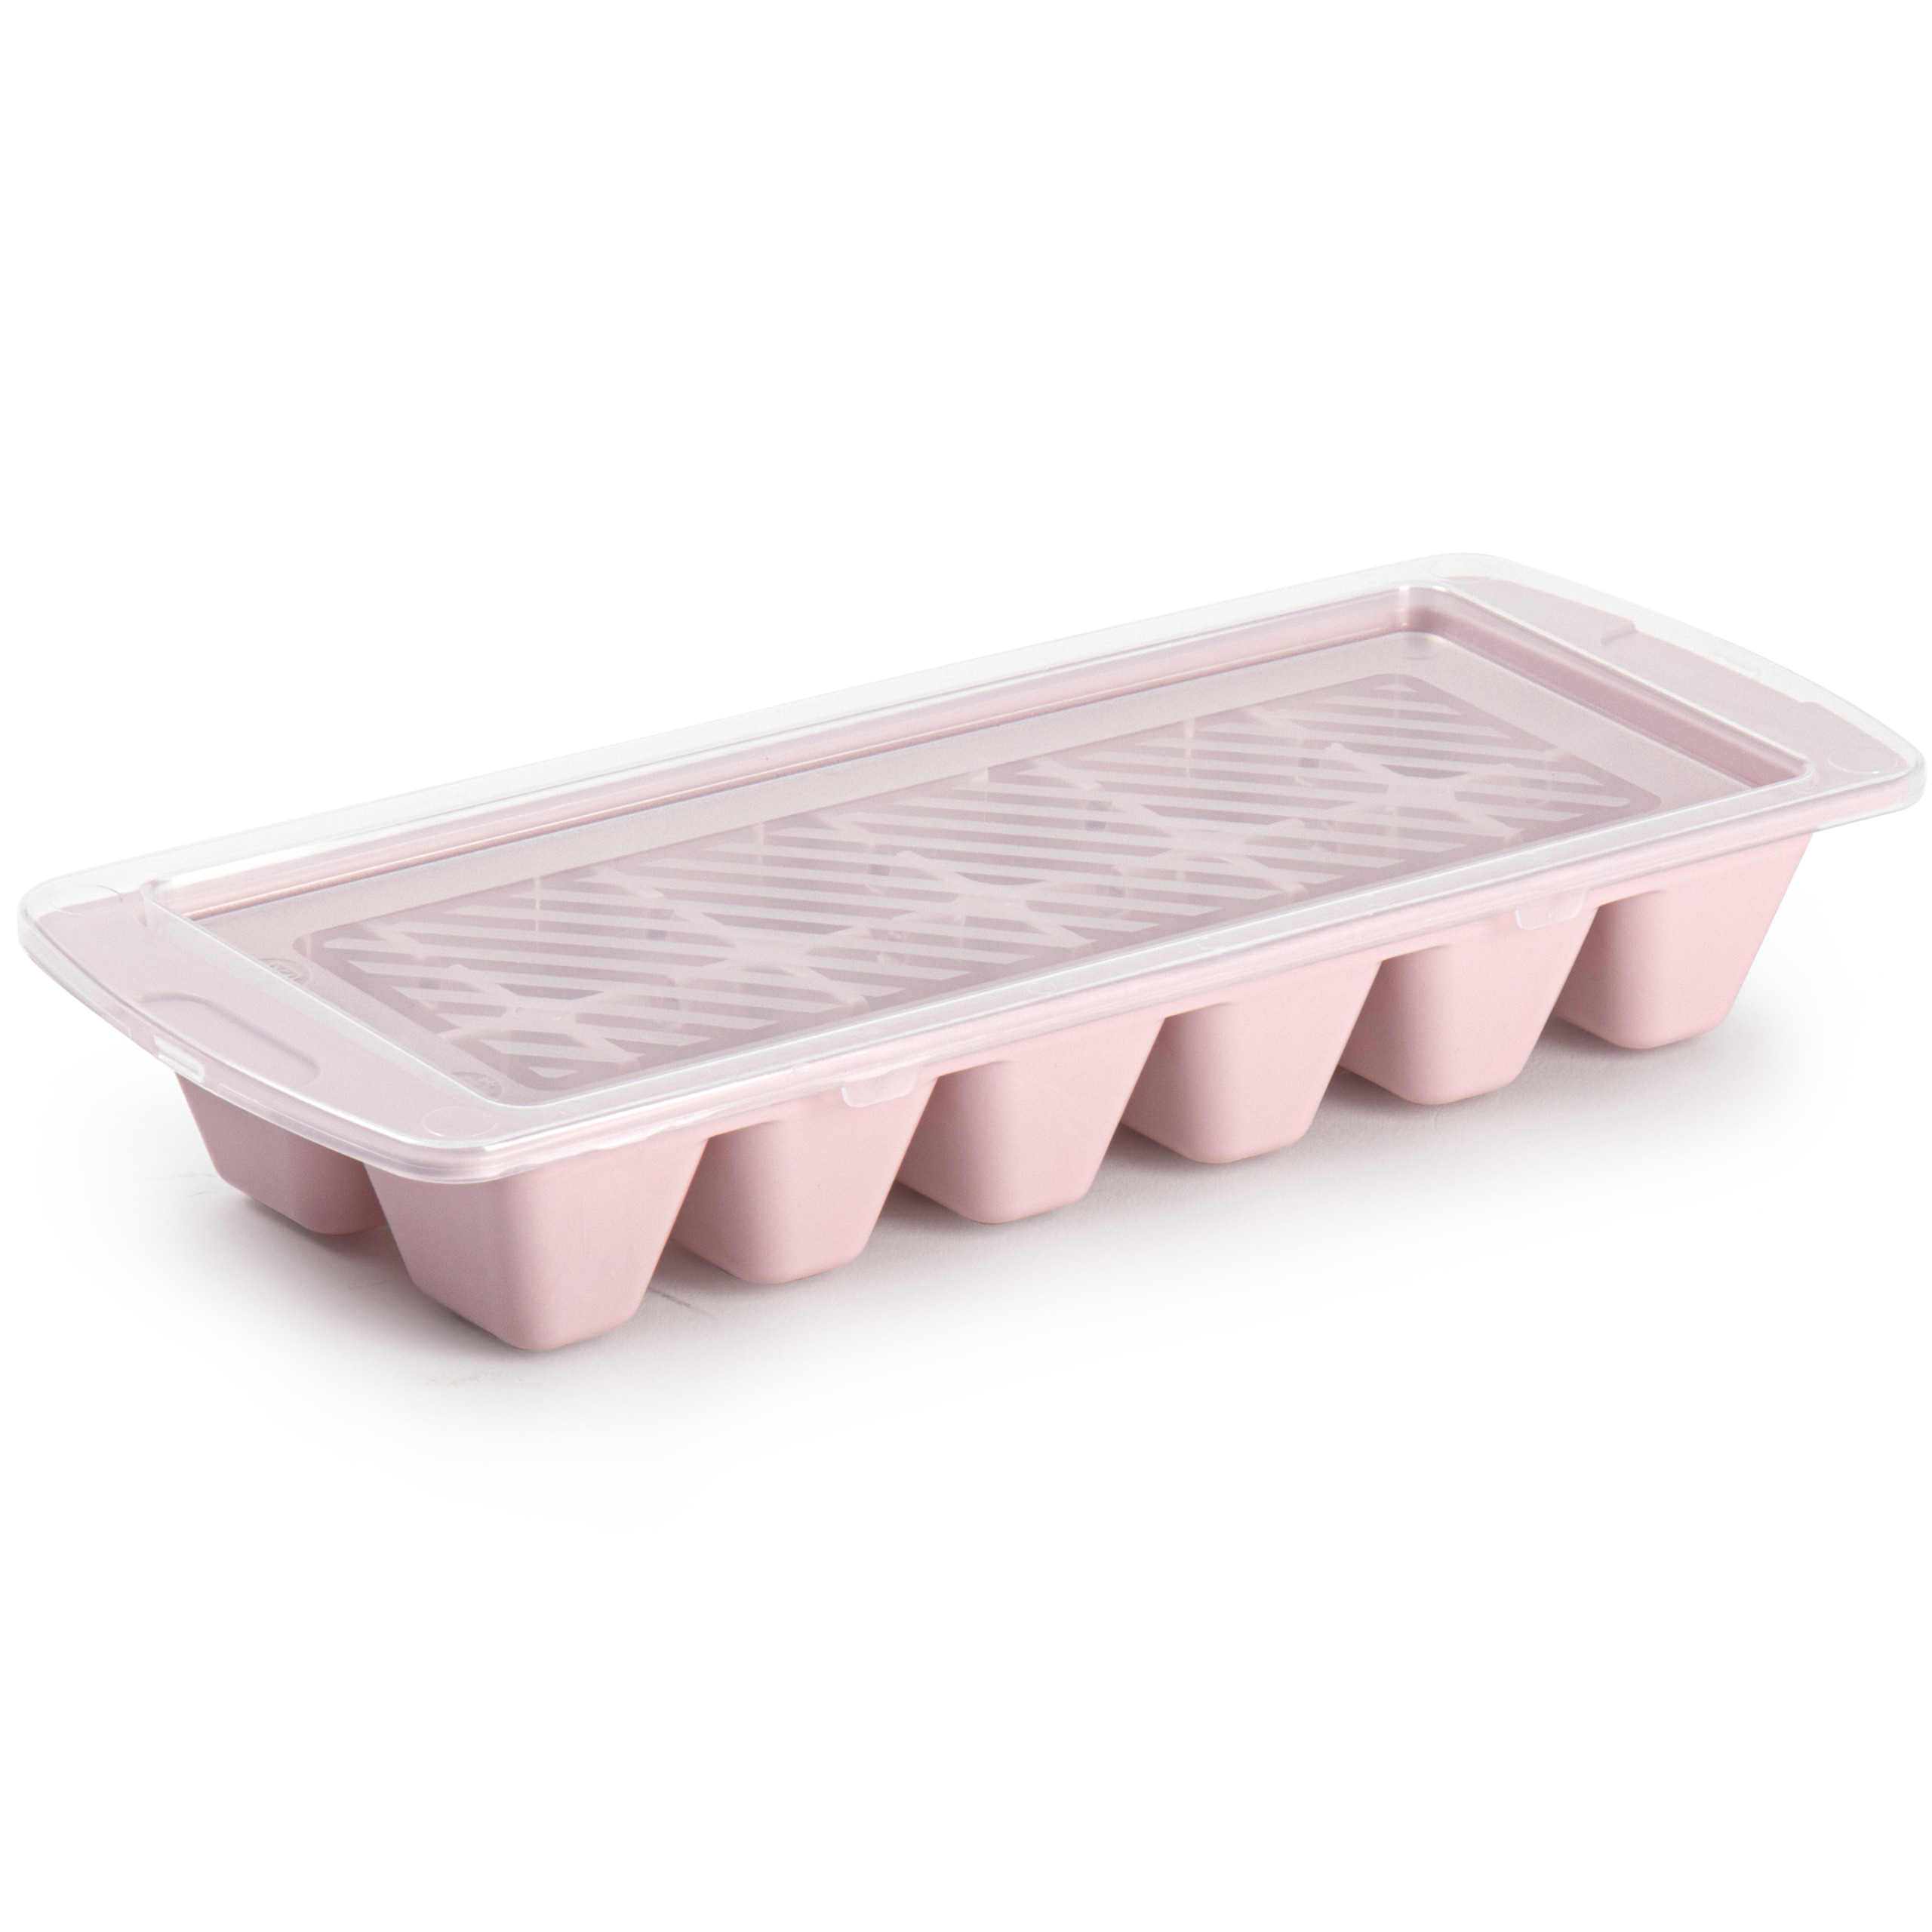 IJsblokjes-ijsklontjes maken kunststof bakje met afsluitdeksel roze 28 x 11 cm